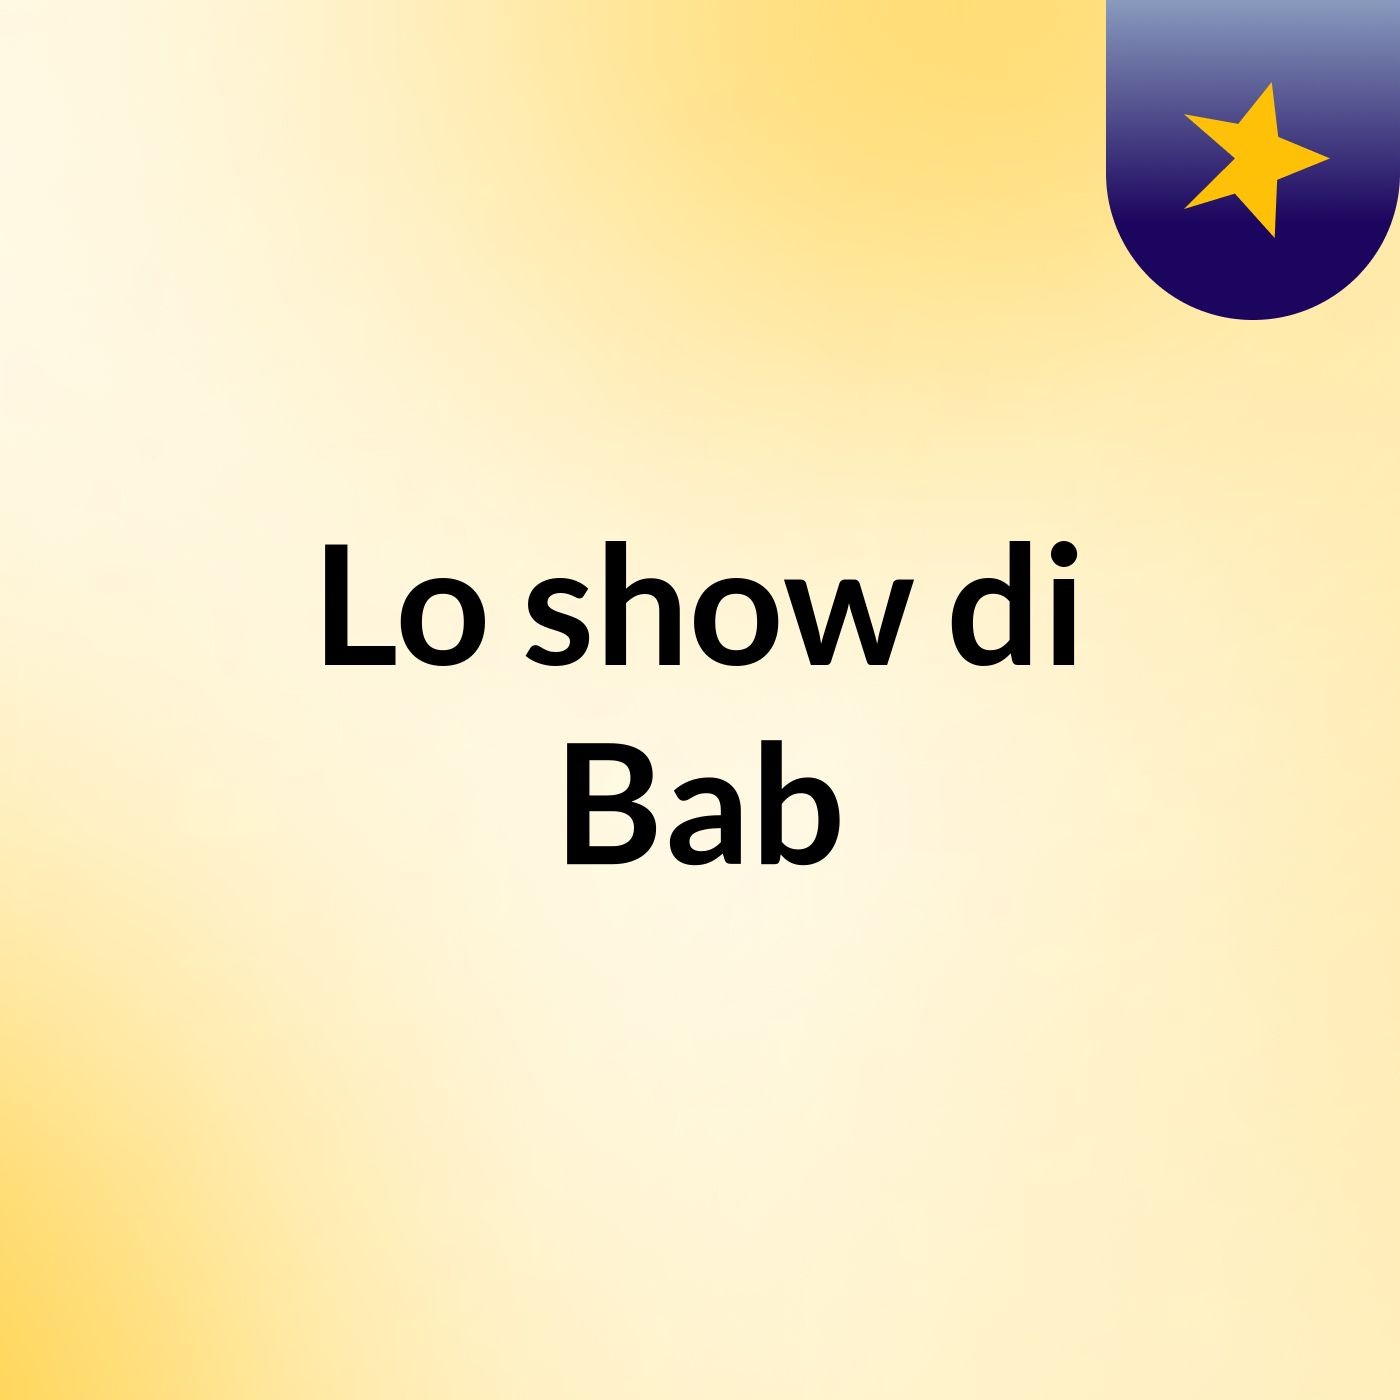 Lo show di Bab